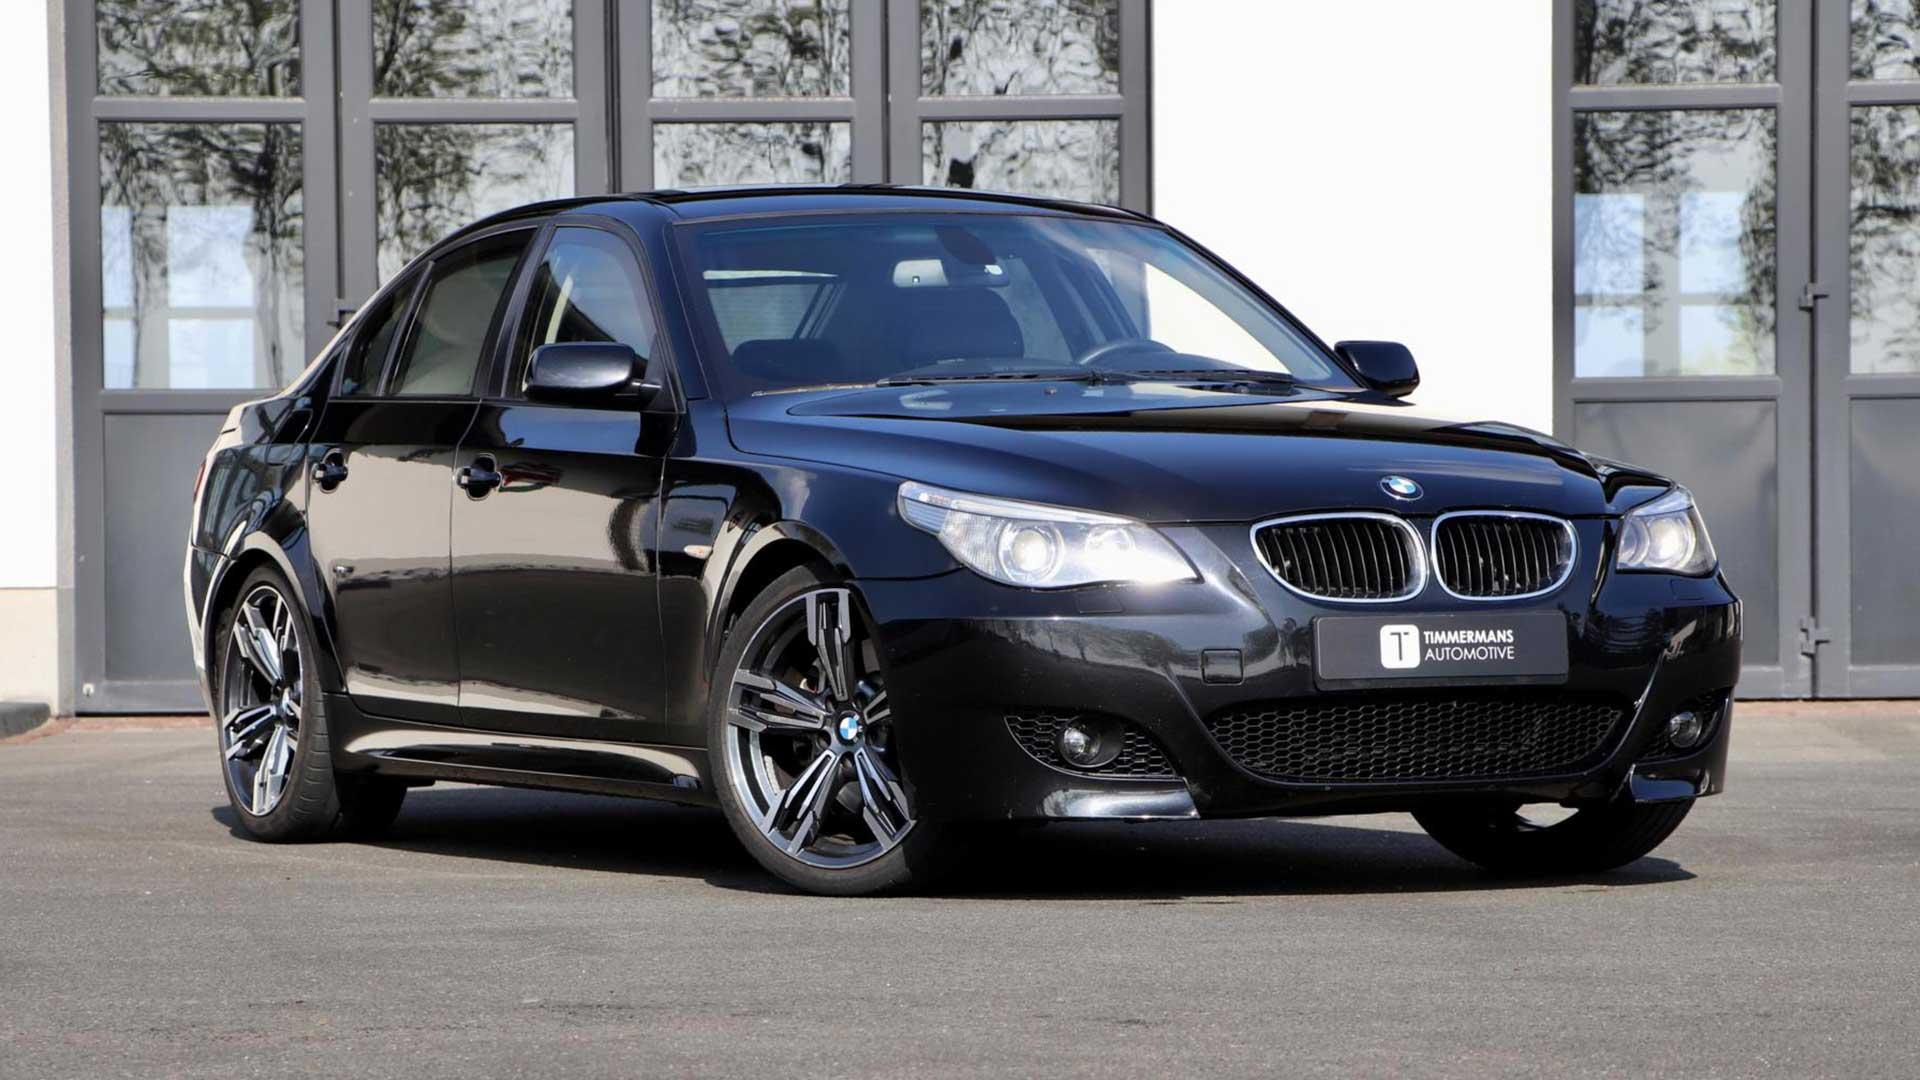 BMW 5-serie (E60) is een guilty pleasure - TopGear Nederland